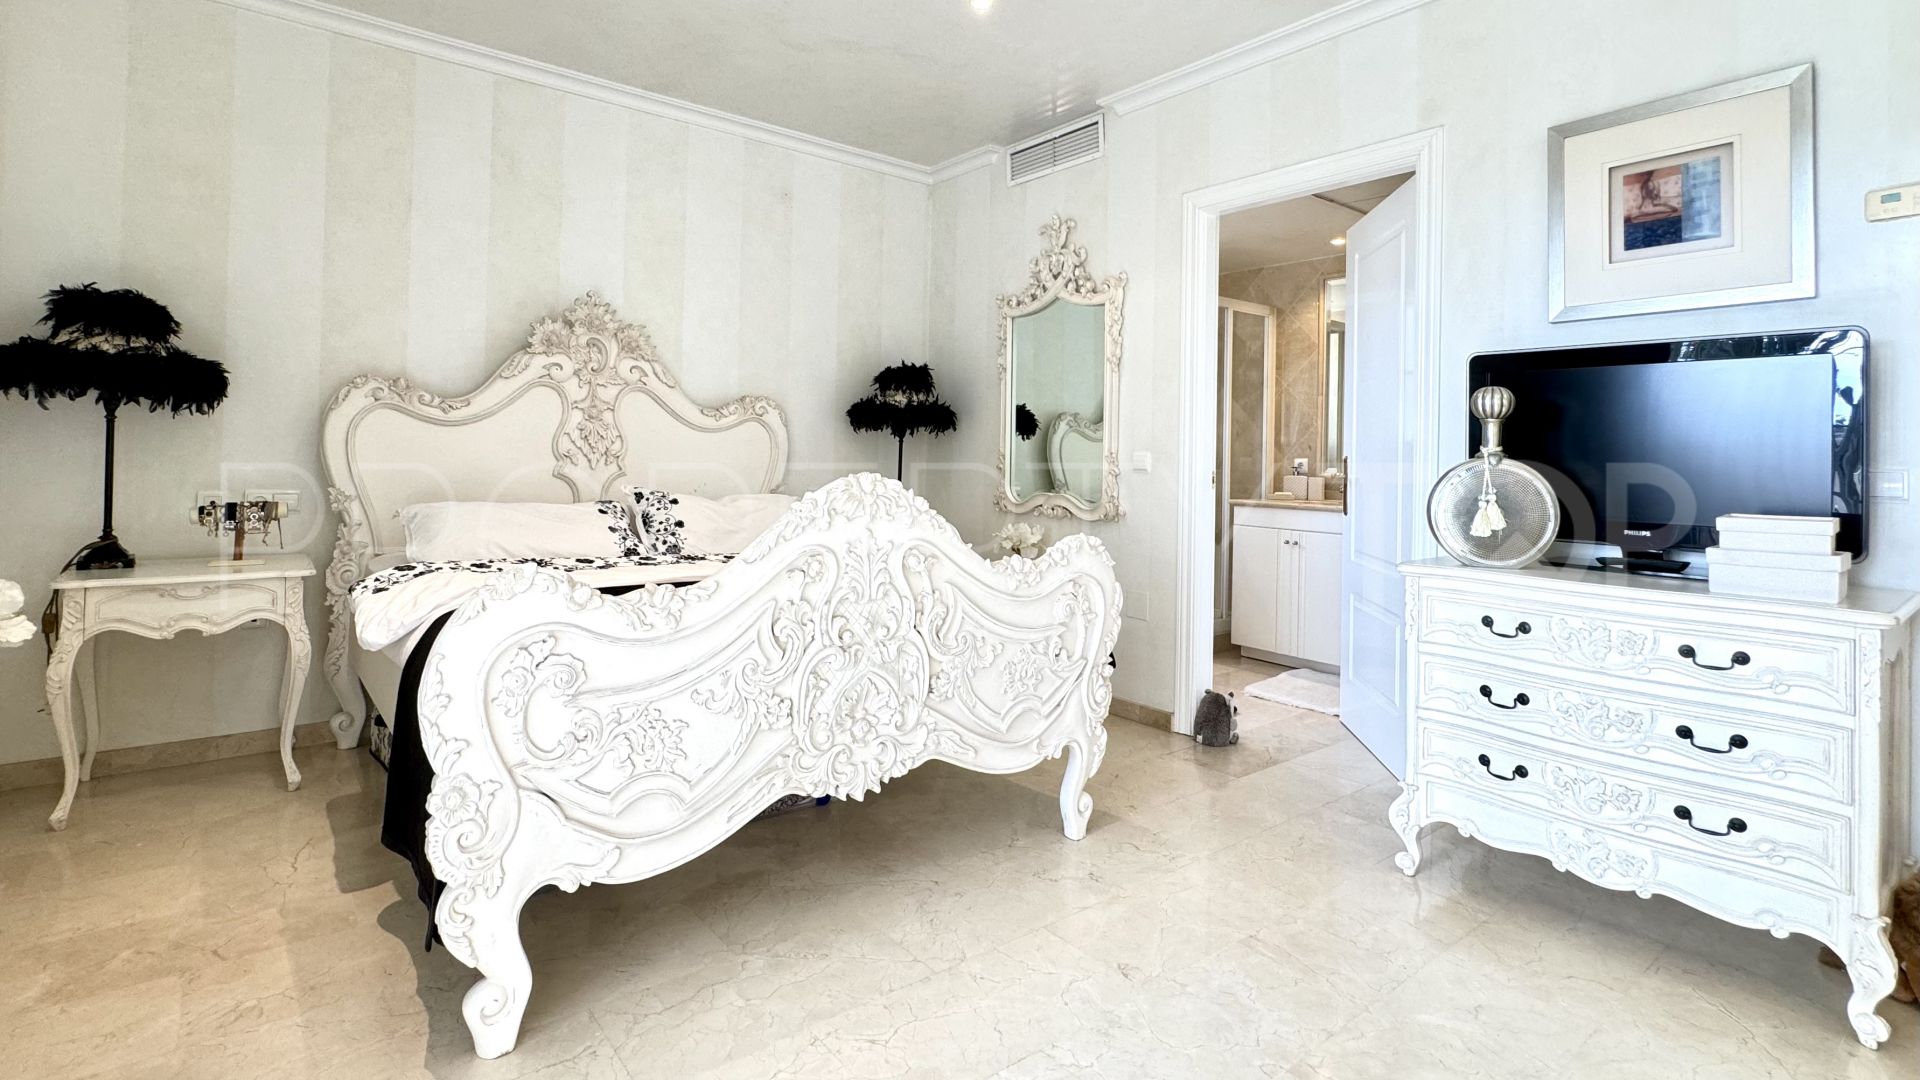 5 bedrooms villa in Riviera del Sol for sale